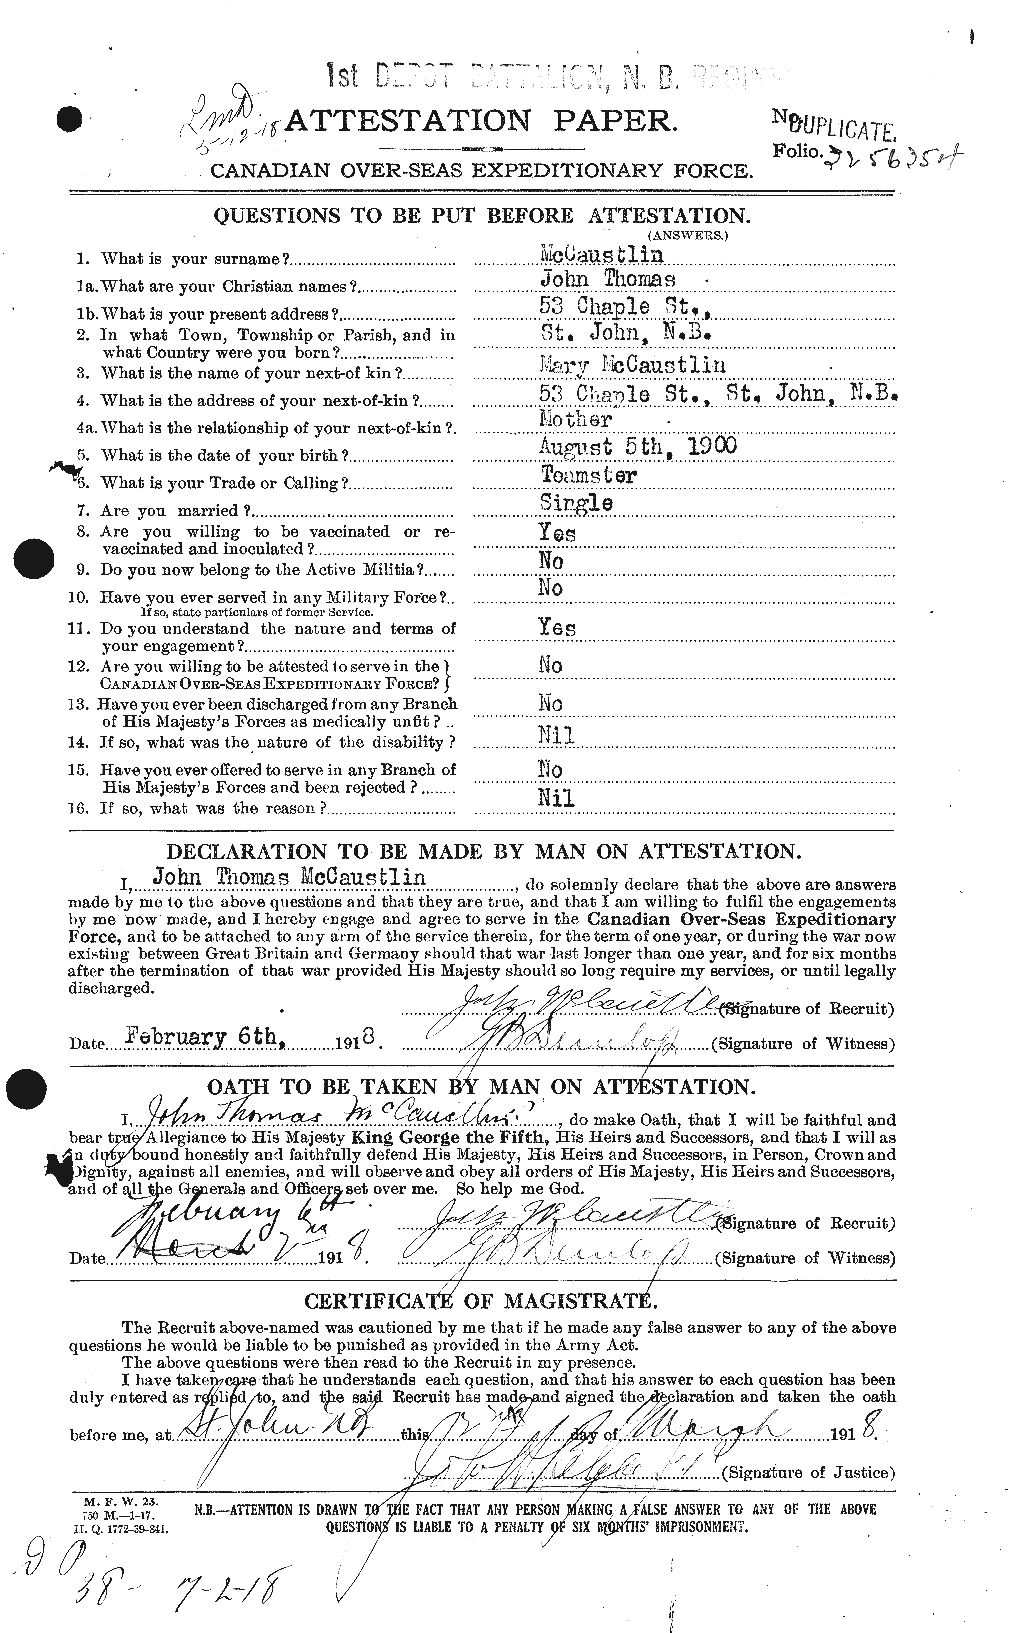 Dossiers du Personnel de la Première Guerre mondiale - CEC 132566a